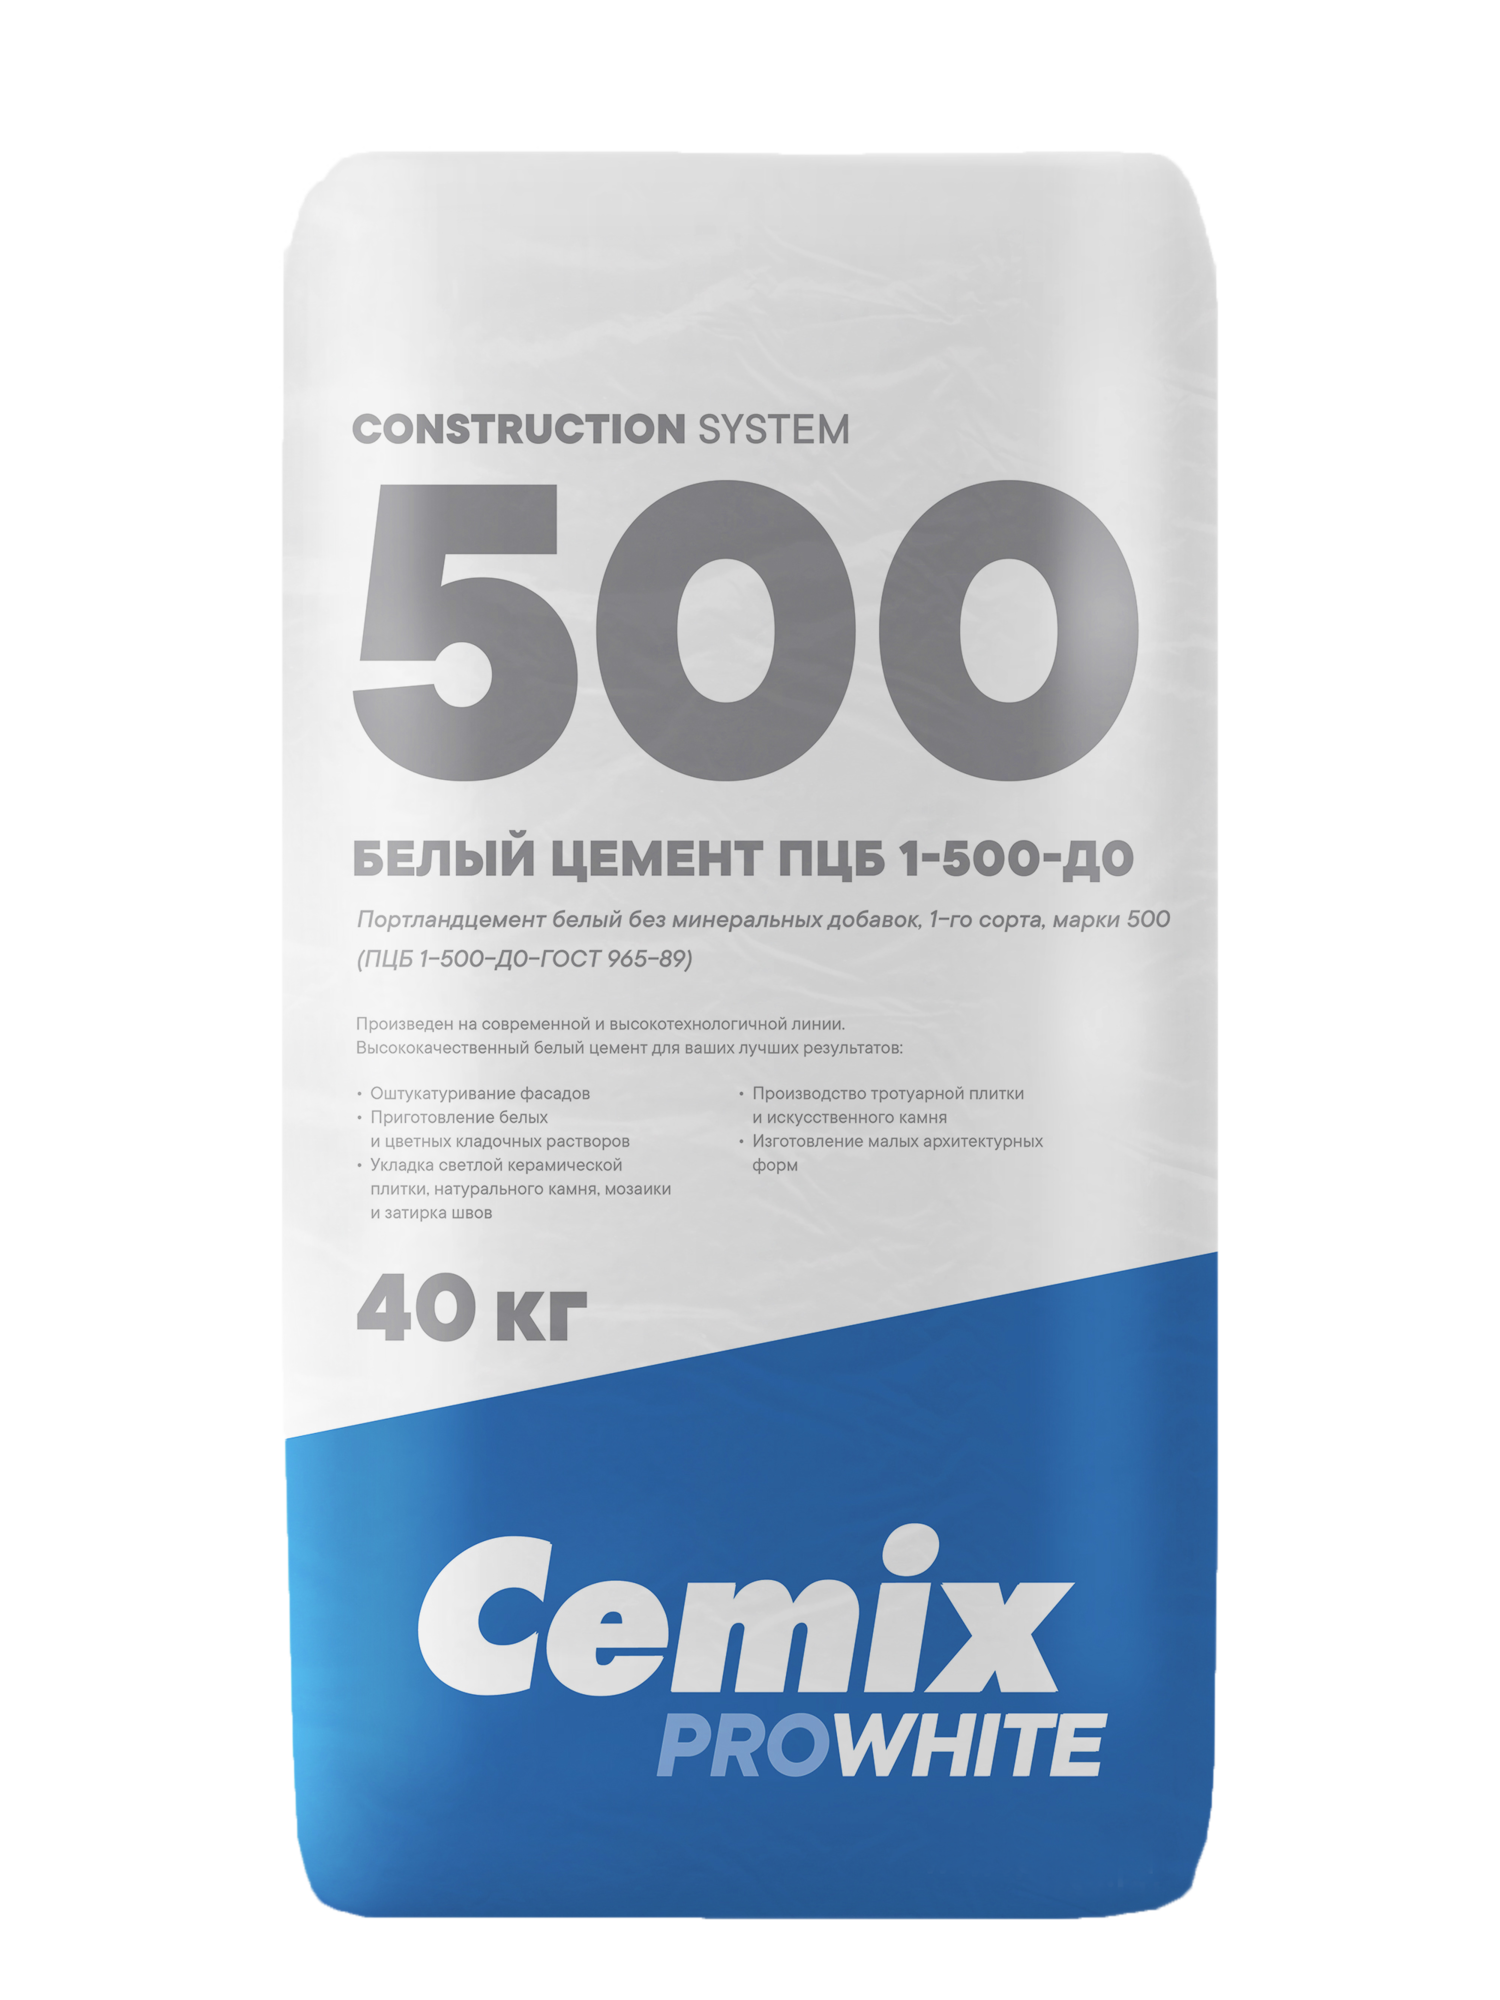 Белый цемент Cemix (Россия) в мешках по 40 кг